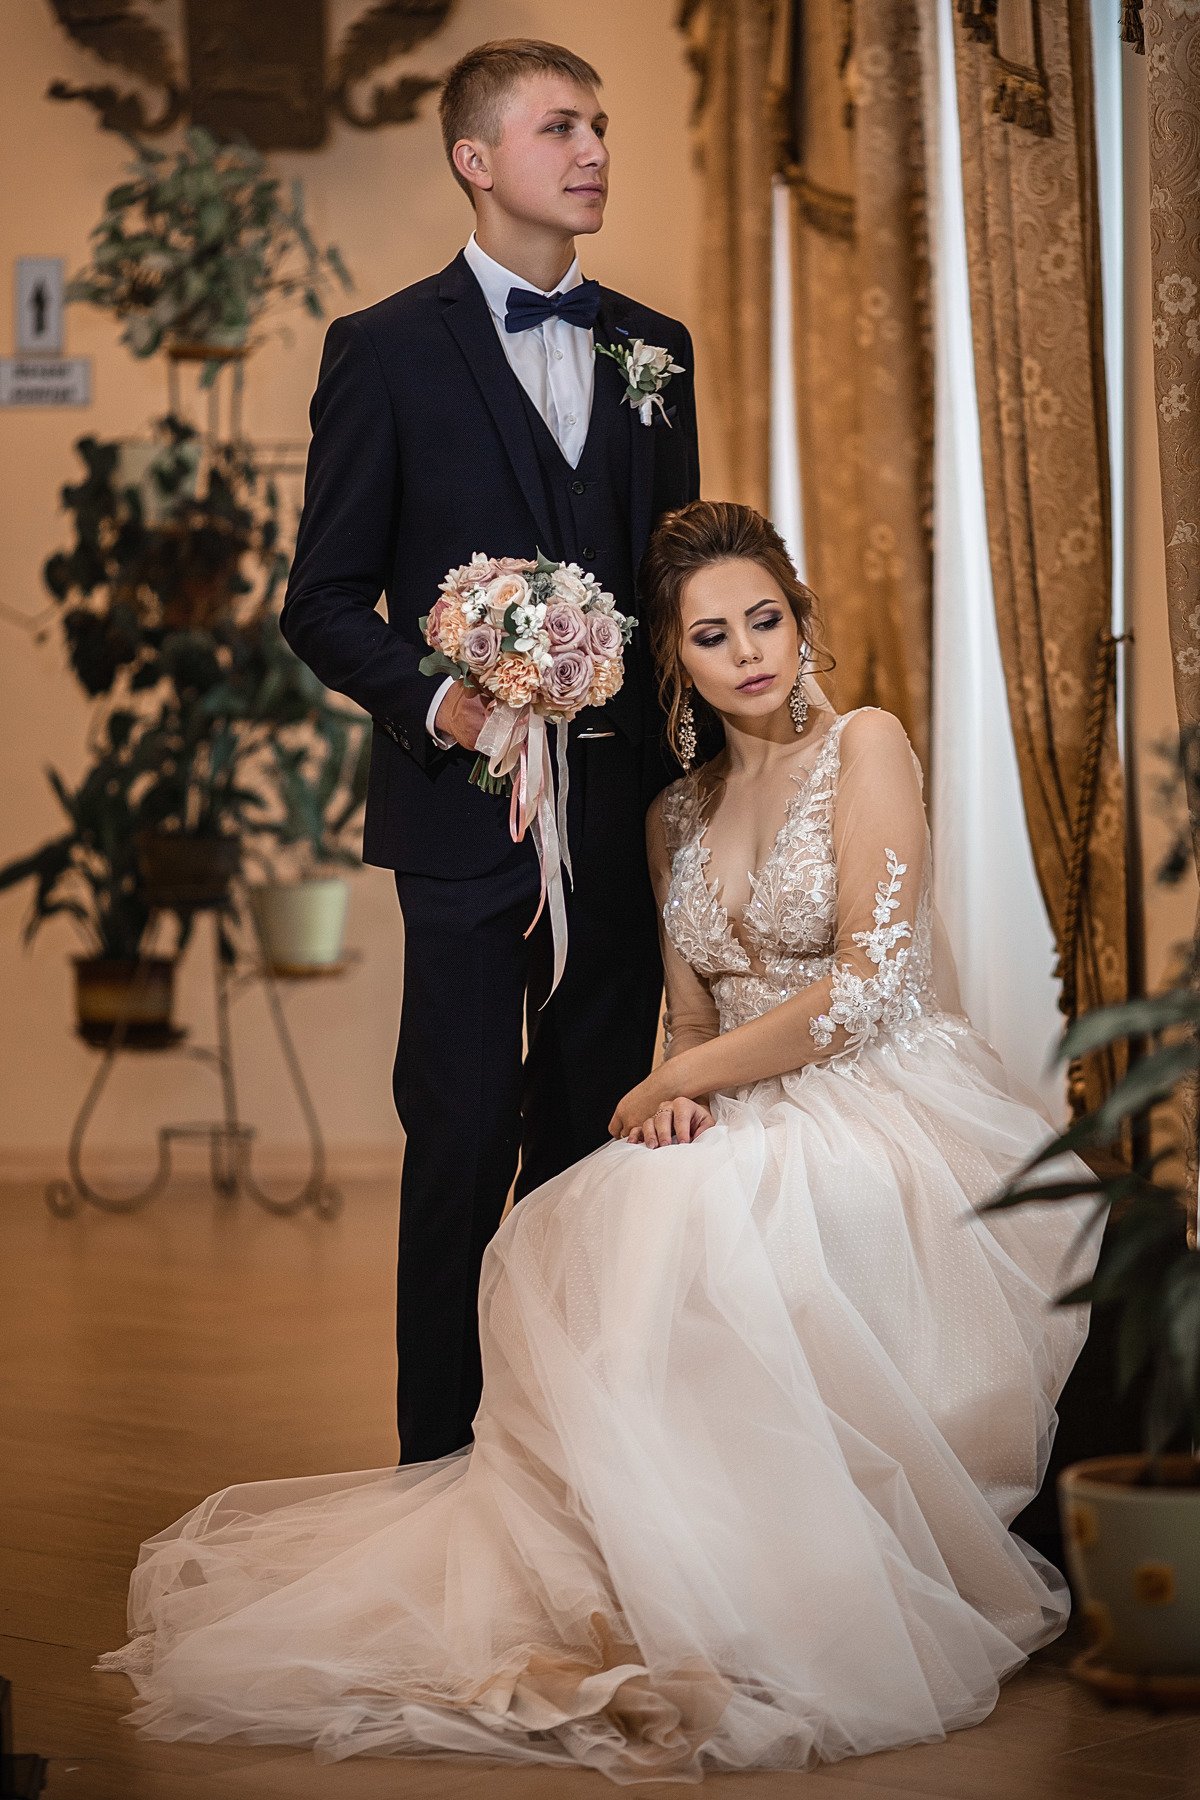 свадьба, свадебная фотосессия, жених, невеста, жених и невеста, свадебный букет, белое платье, счастье, любовь, осень, Владимир Васильев